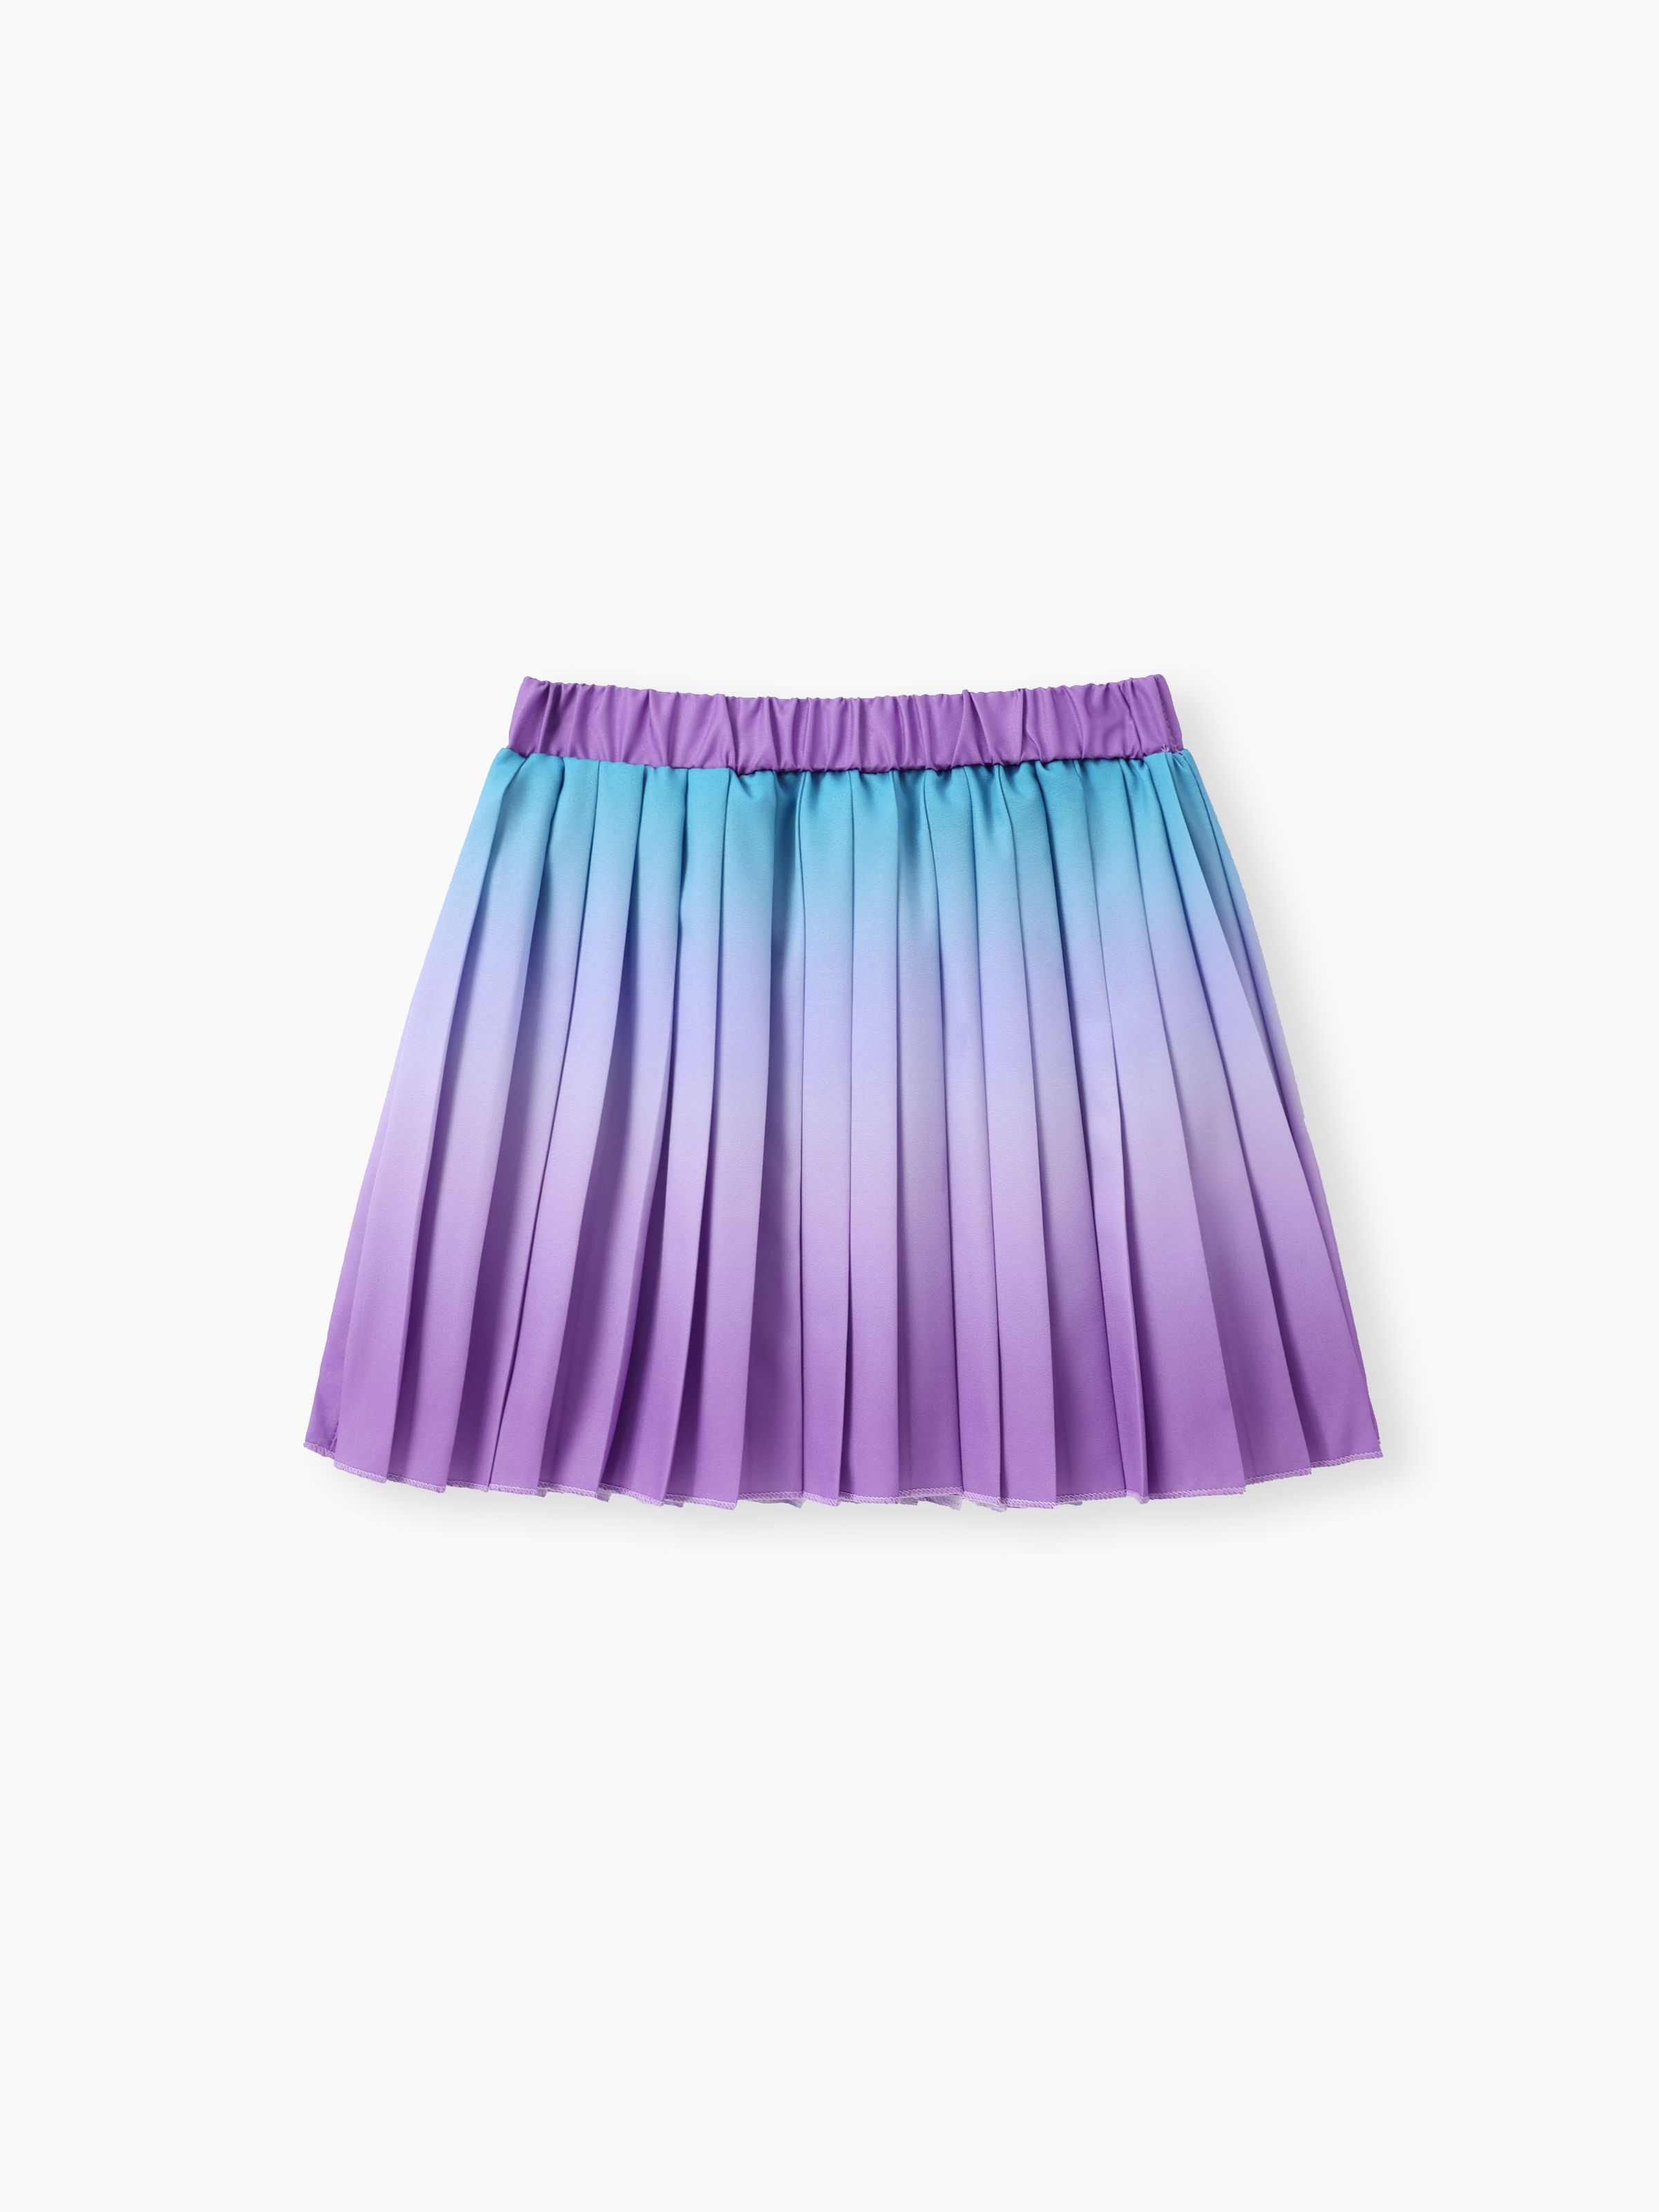 

Sweet Gradual Change Oversized Skirt for Girls - Polyester, 1pc Set